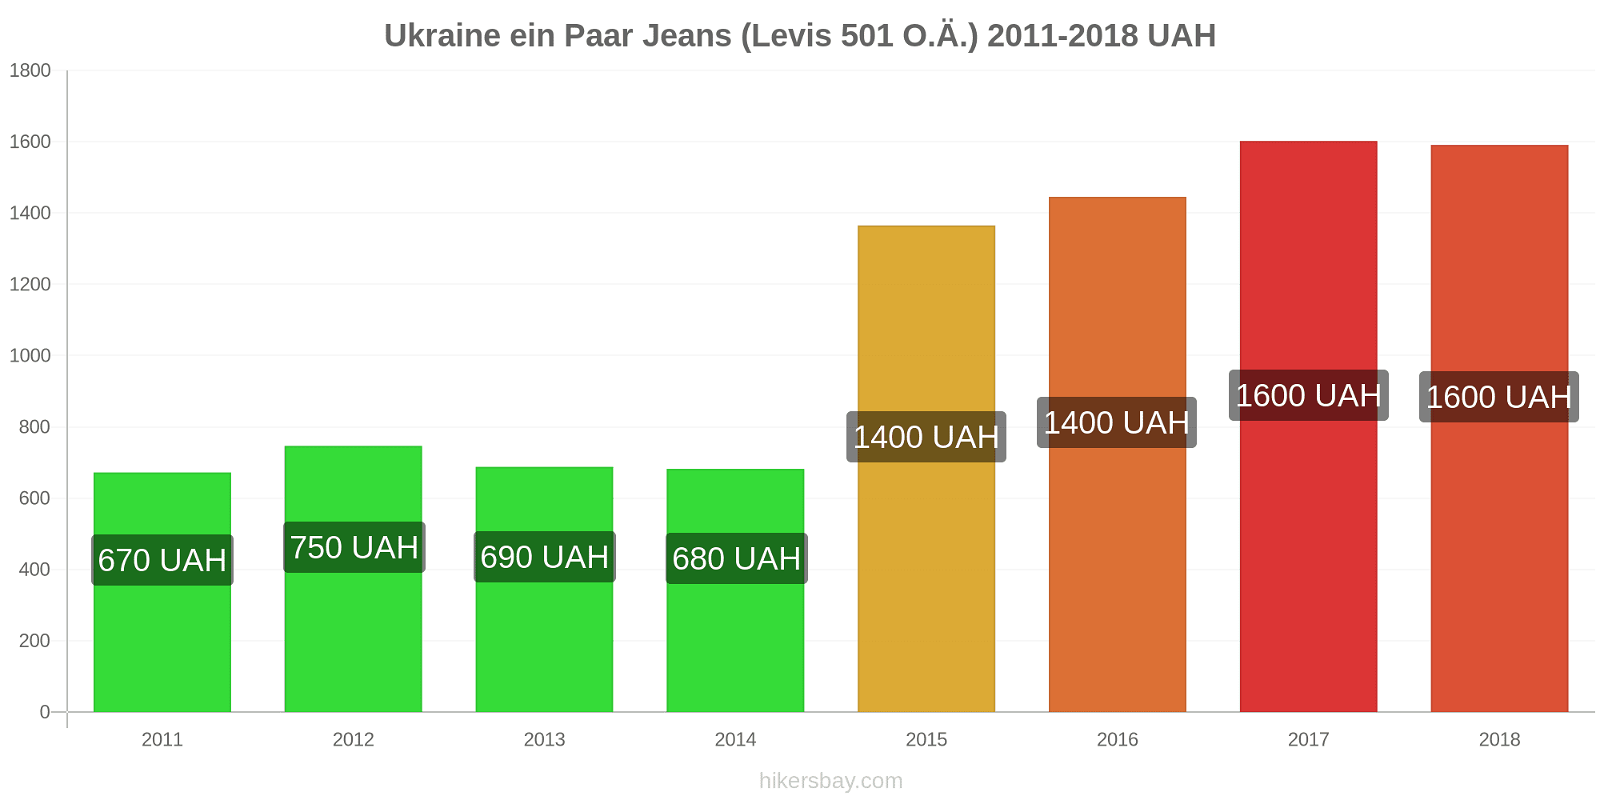 Ukraine Preisänderungen 1 Paar Jeans (Levis 501 oder ähnlich) hikersbay.com